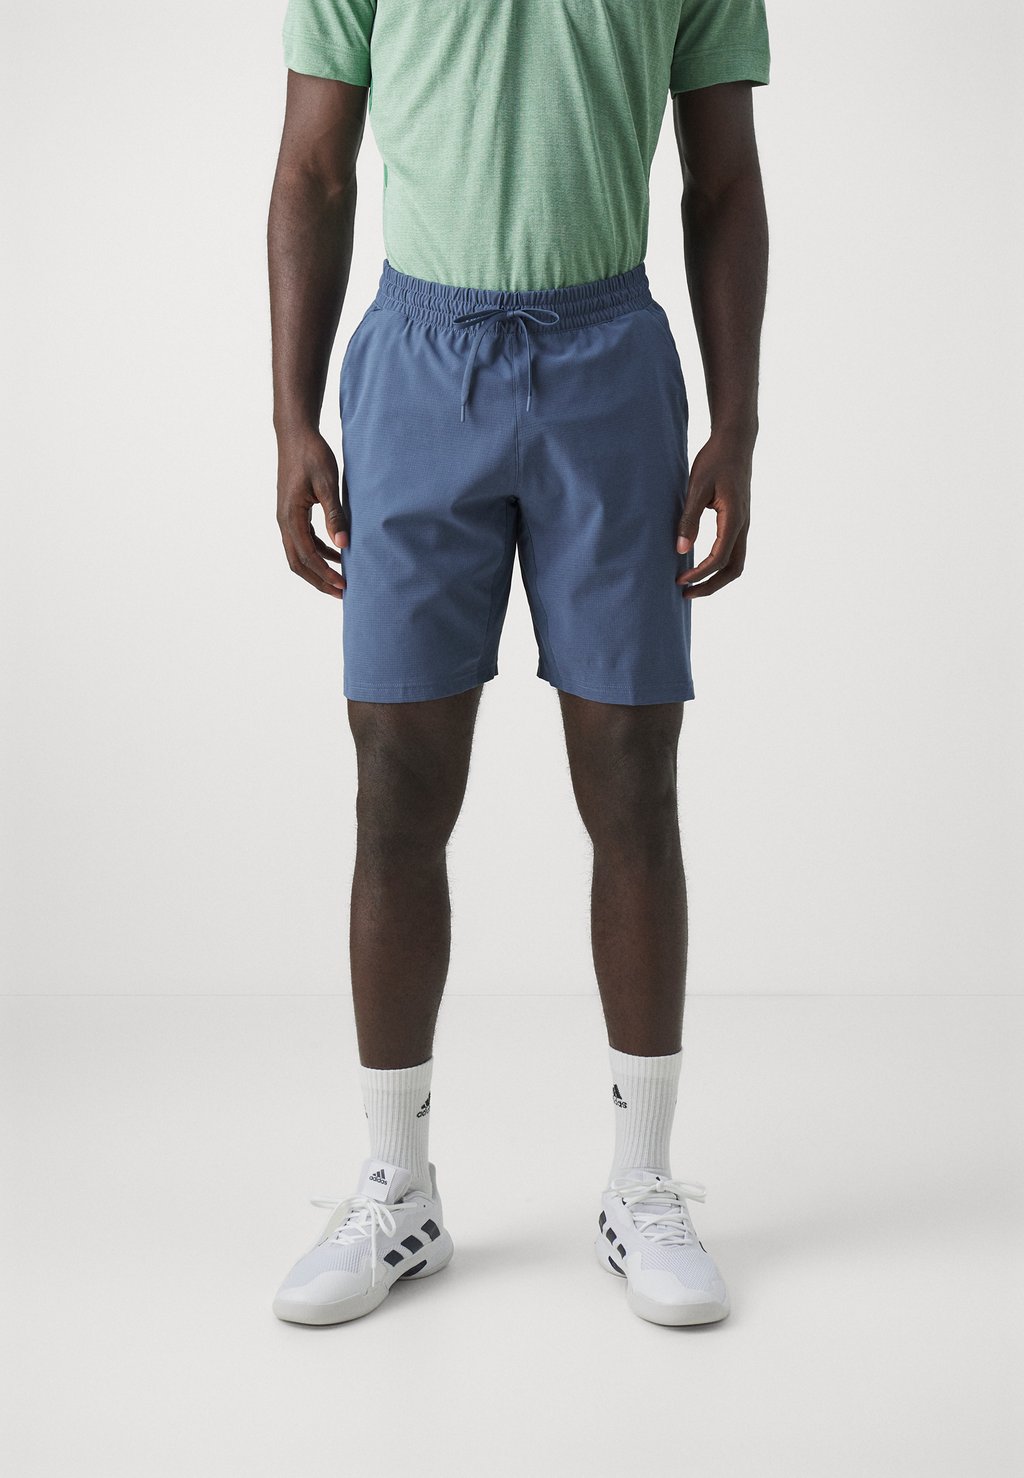 Спортивные шорты Ergo Adidas, цвет preloved ink